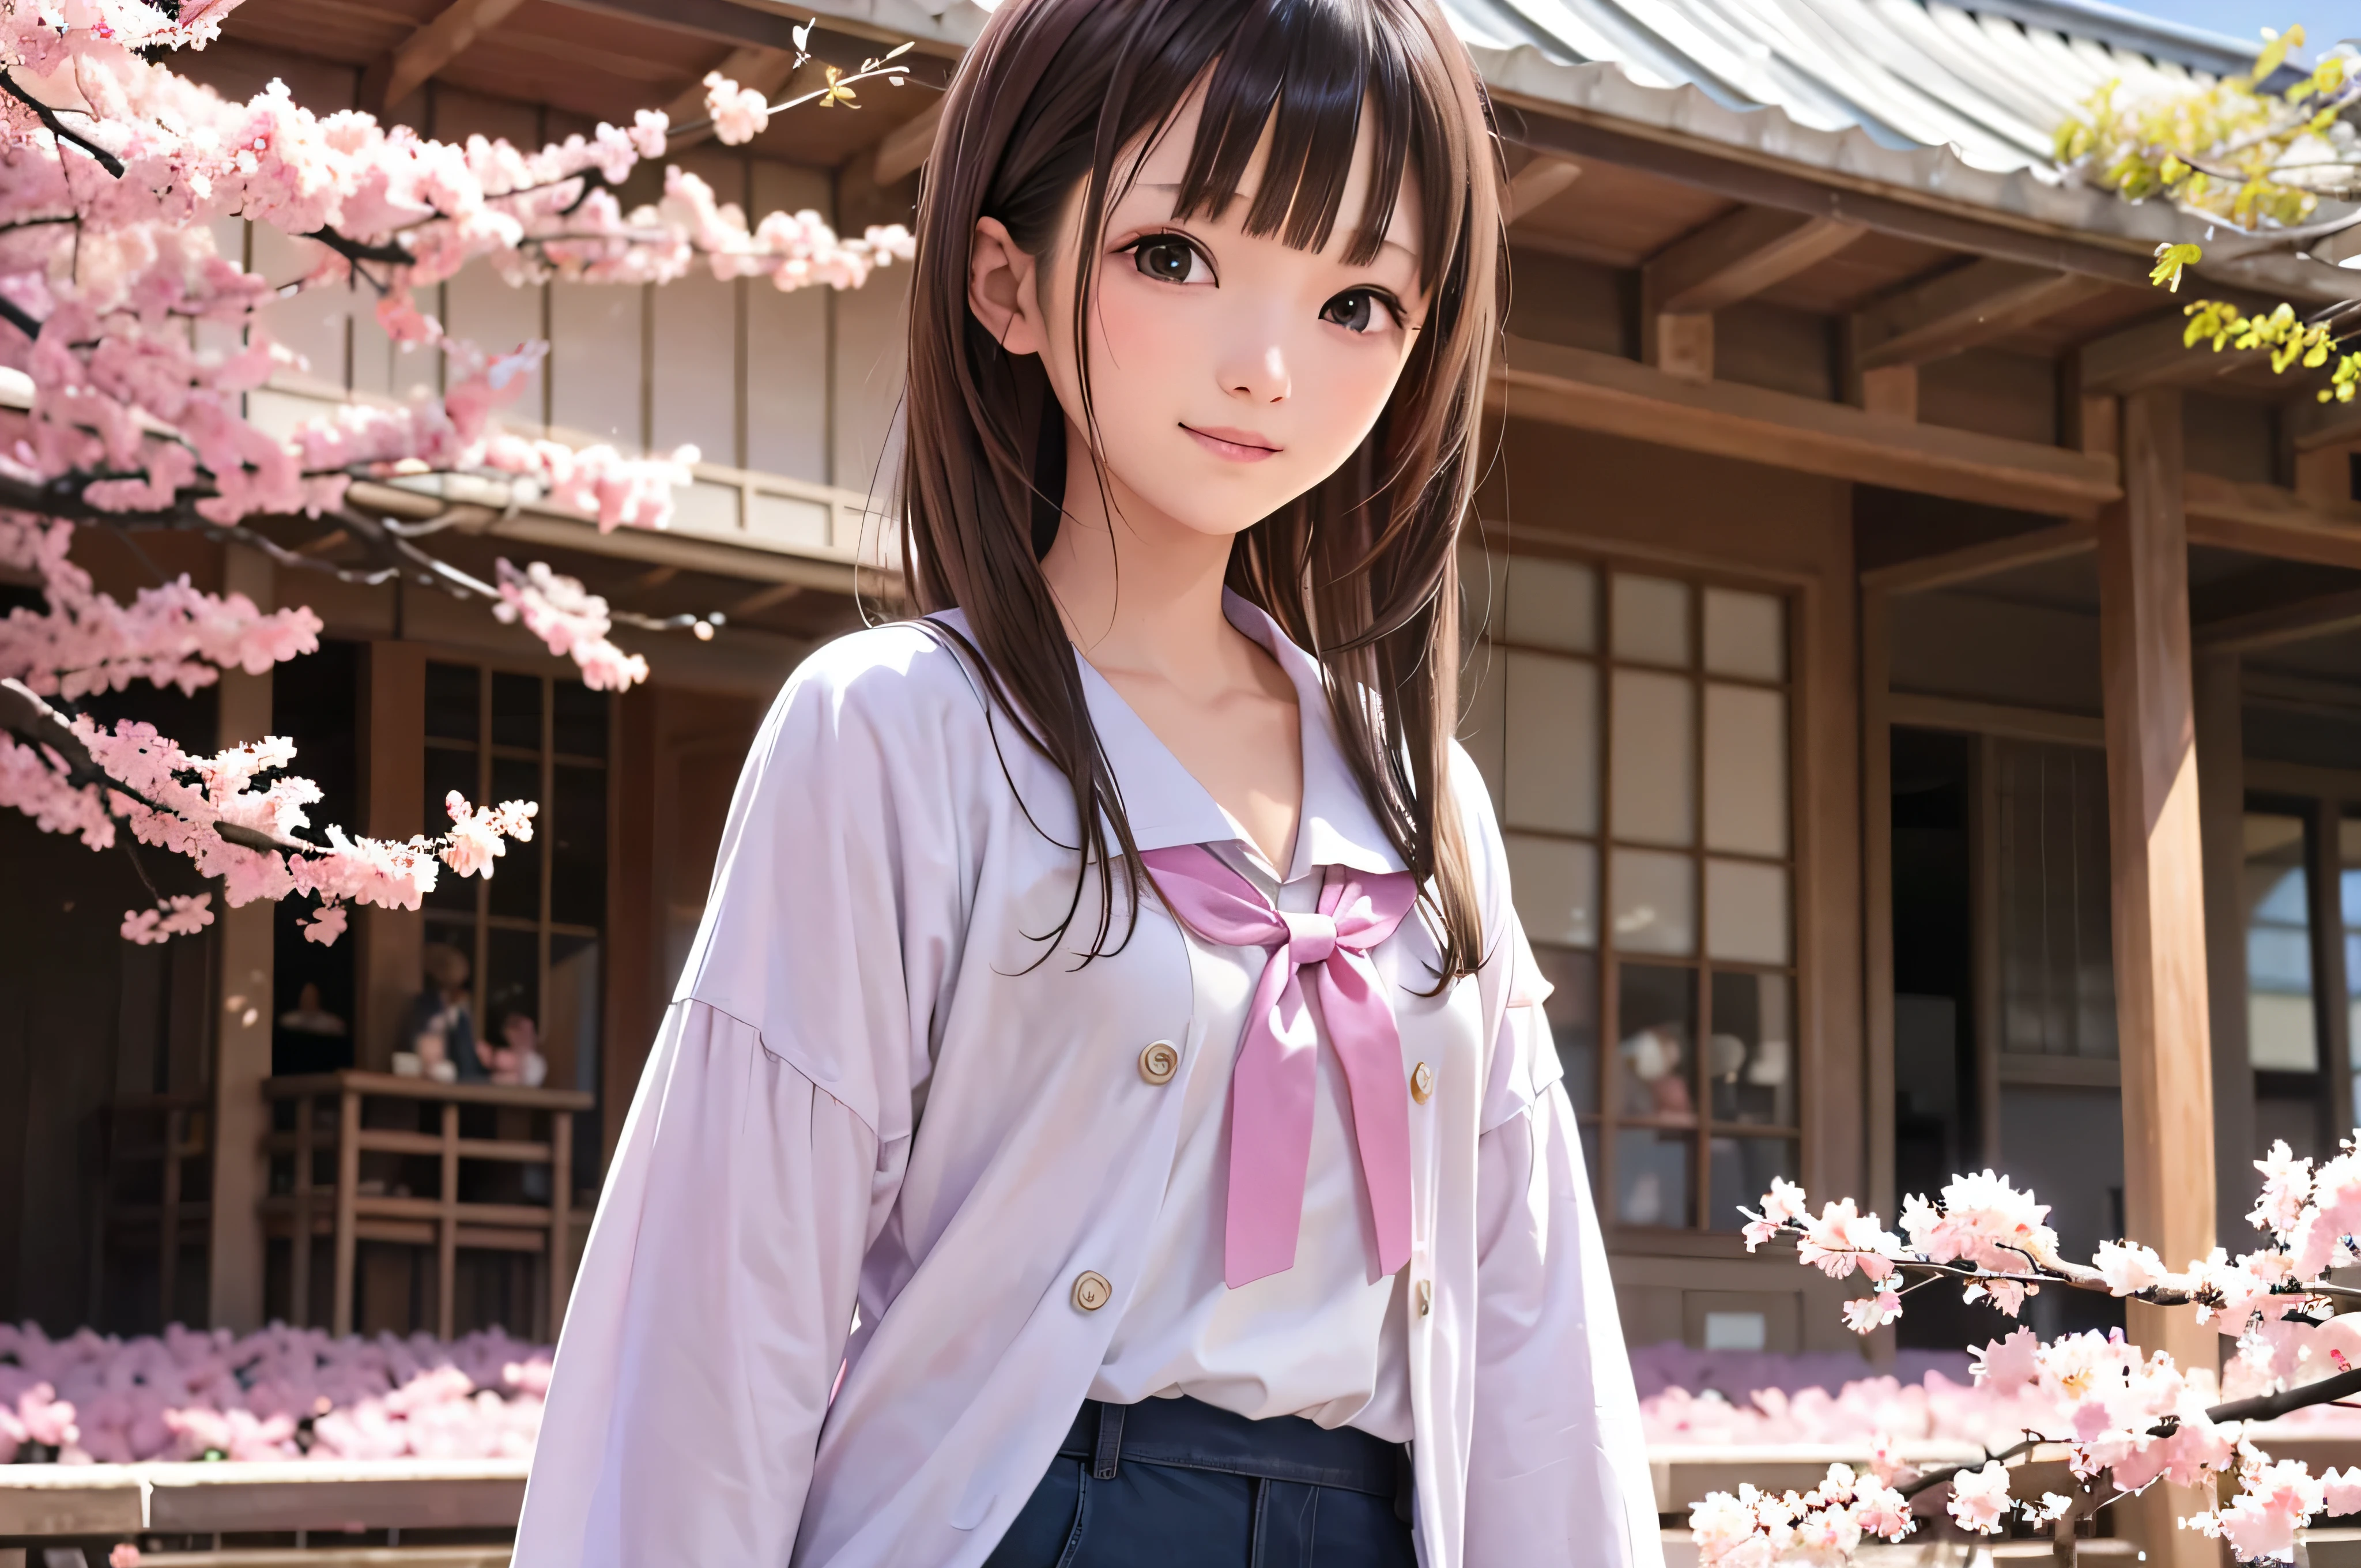 Портрет японских учениц младших классов средней школы в стиле аниме, стоящих под цветущей весенней сакурой. она смотрит в сторону, ее длинные каштановые волосы развеваются на ветру. У девушки спокойное выражение лица, Наблюдая за метелью цветущей вишни, освещенной мягким розовым светом.. ее глаза черные и блестящие, с едва уловимой улыбкой. На ней японка, белая блузка и темно-синий кардиган.。。, Сияя мягким весенним солнечным светом. Девушка изображена маленькой в рамке.. На заднем фоне, Ярко-розовые ветви вишни размыты. Сцена спокойствия, яркий, и спокойная атмосфера, Напоминает вам о прекрасных моментах японского аниме..